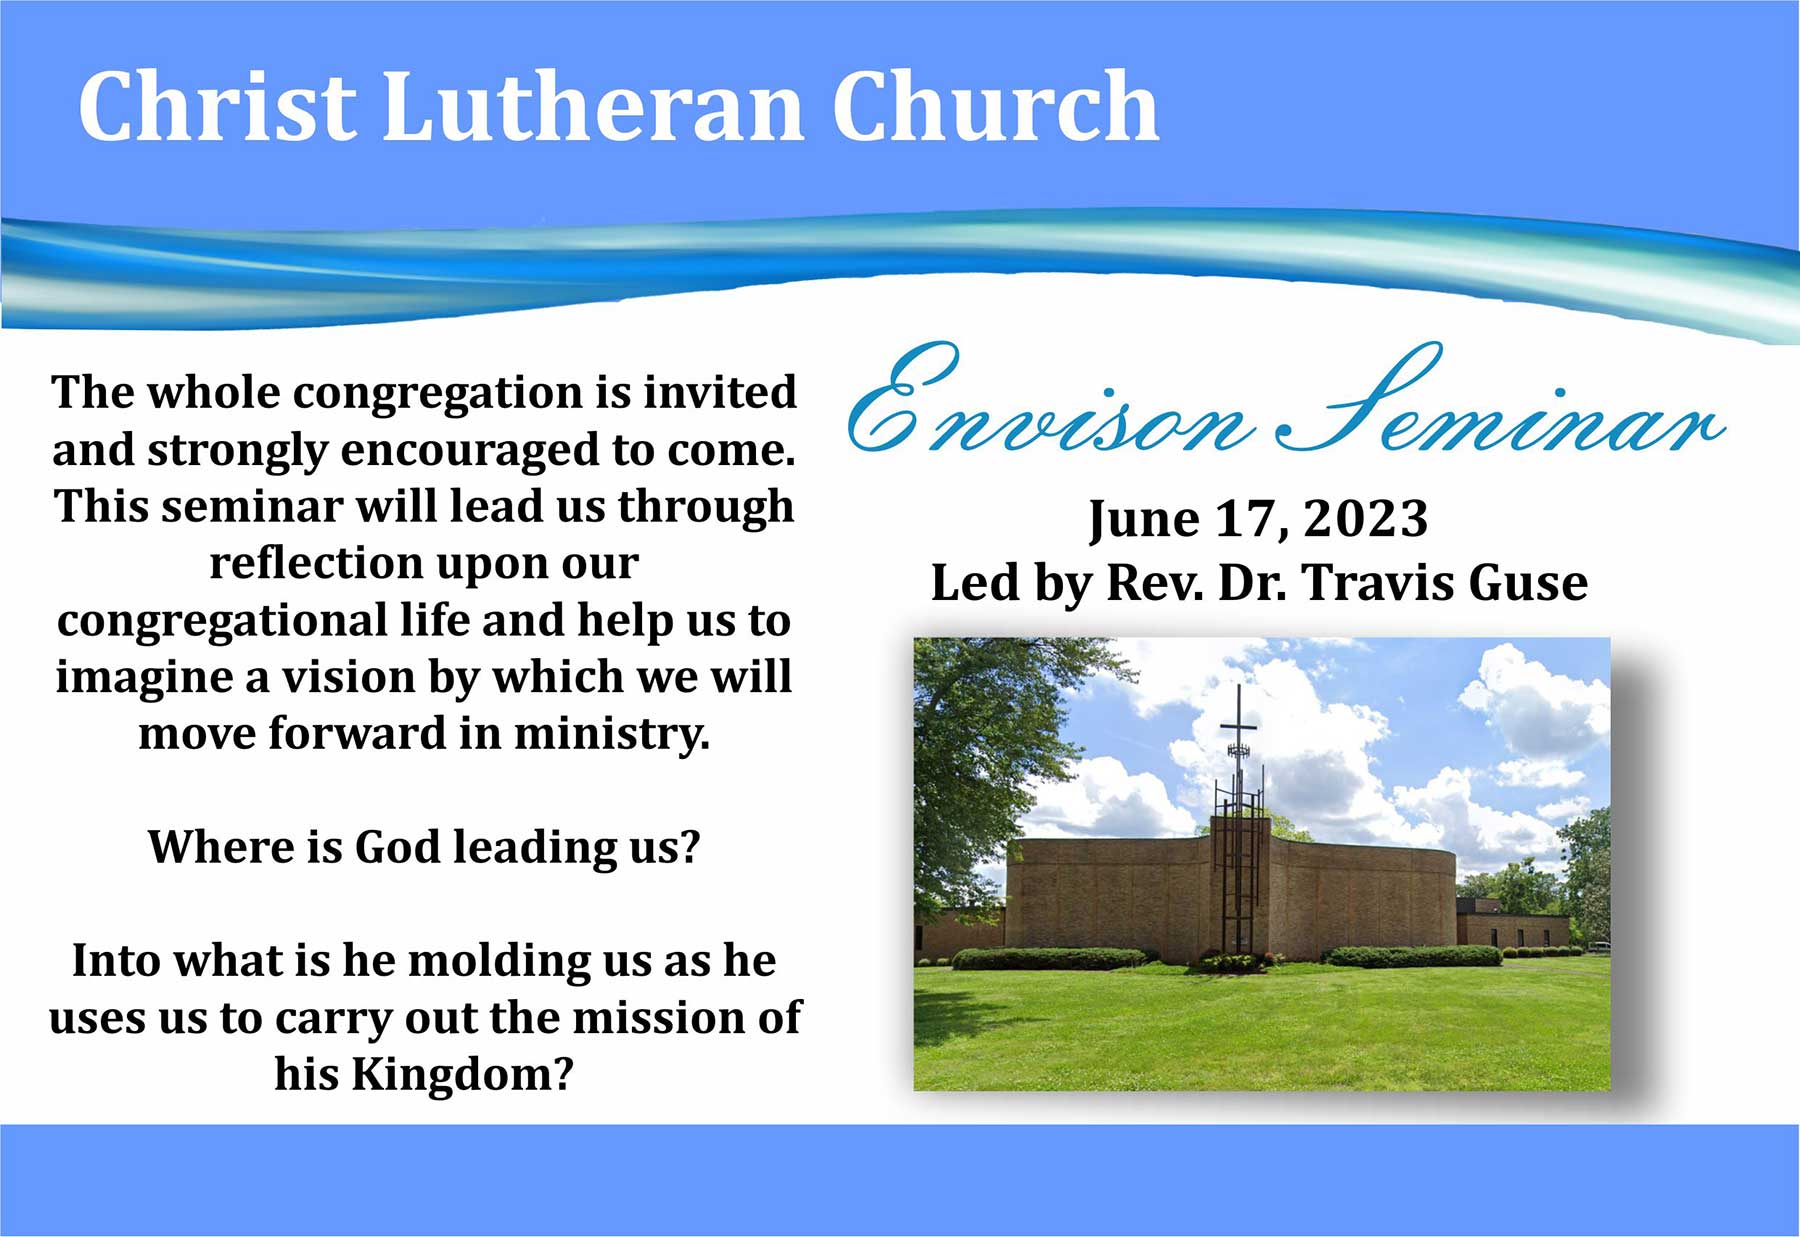 Envision Seminar at Christ Lutheran Church, Hickory NC